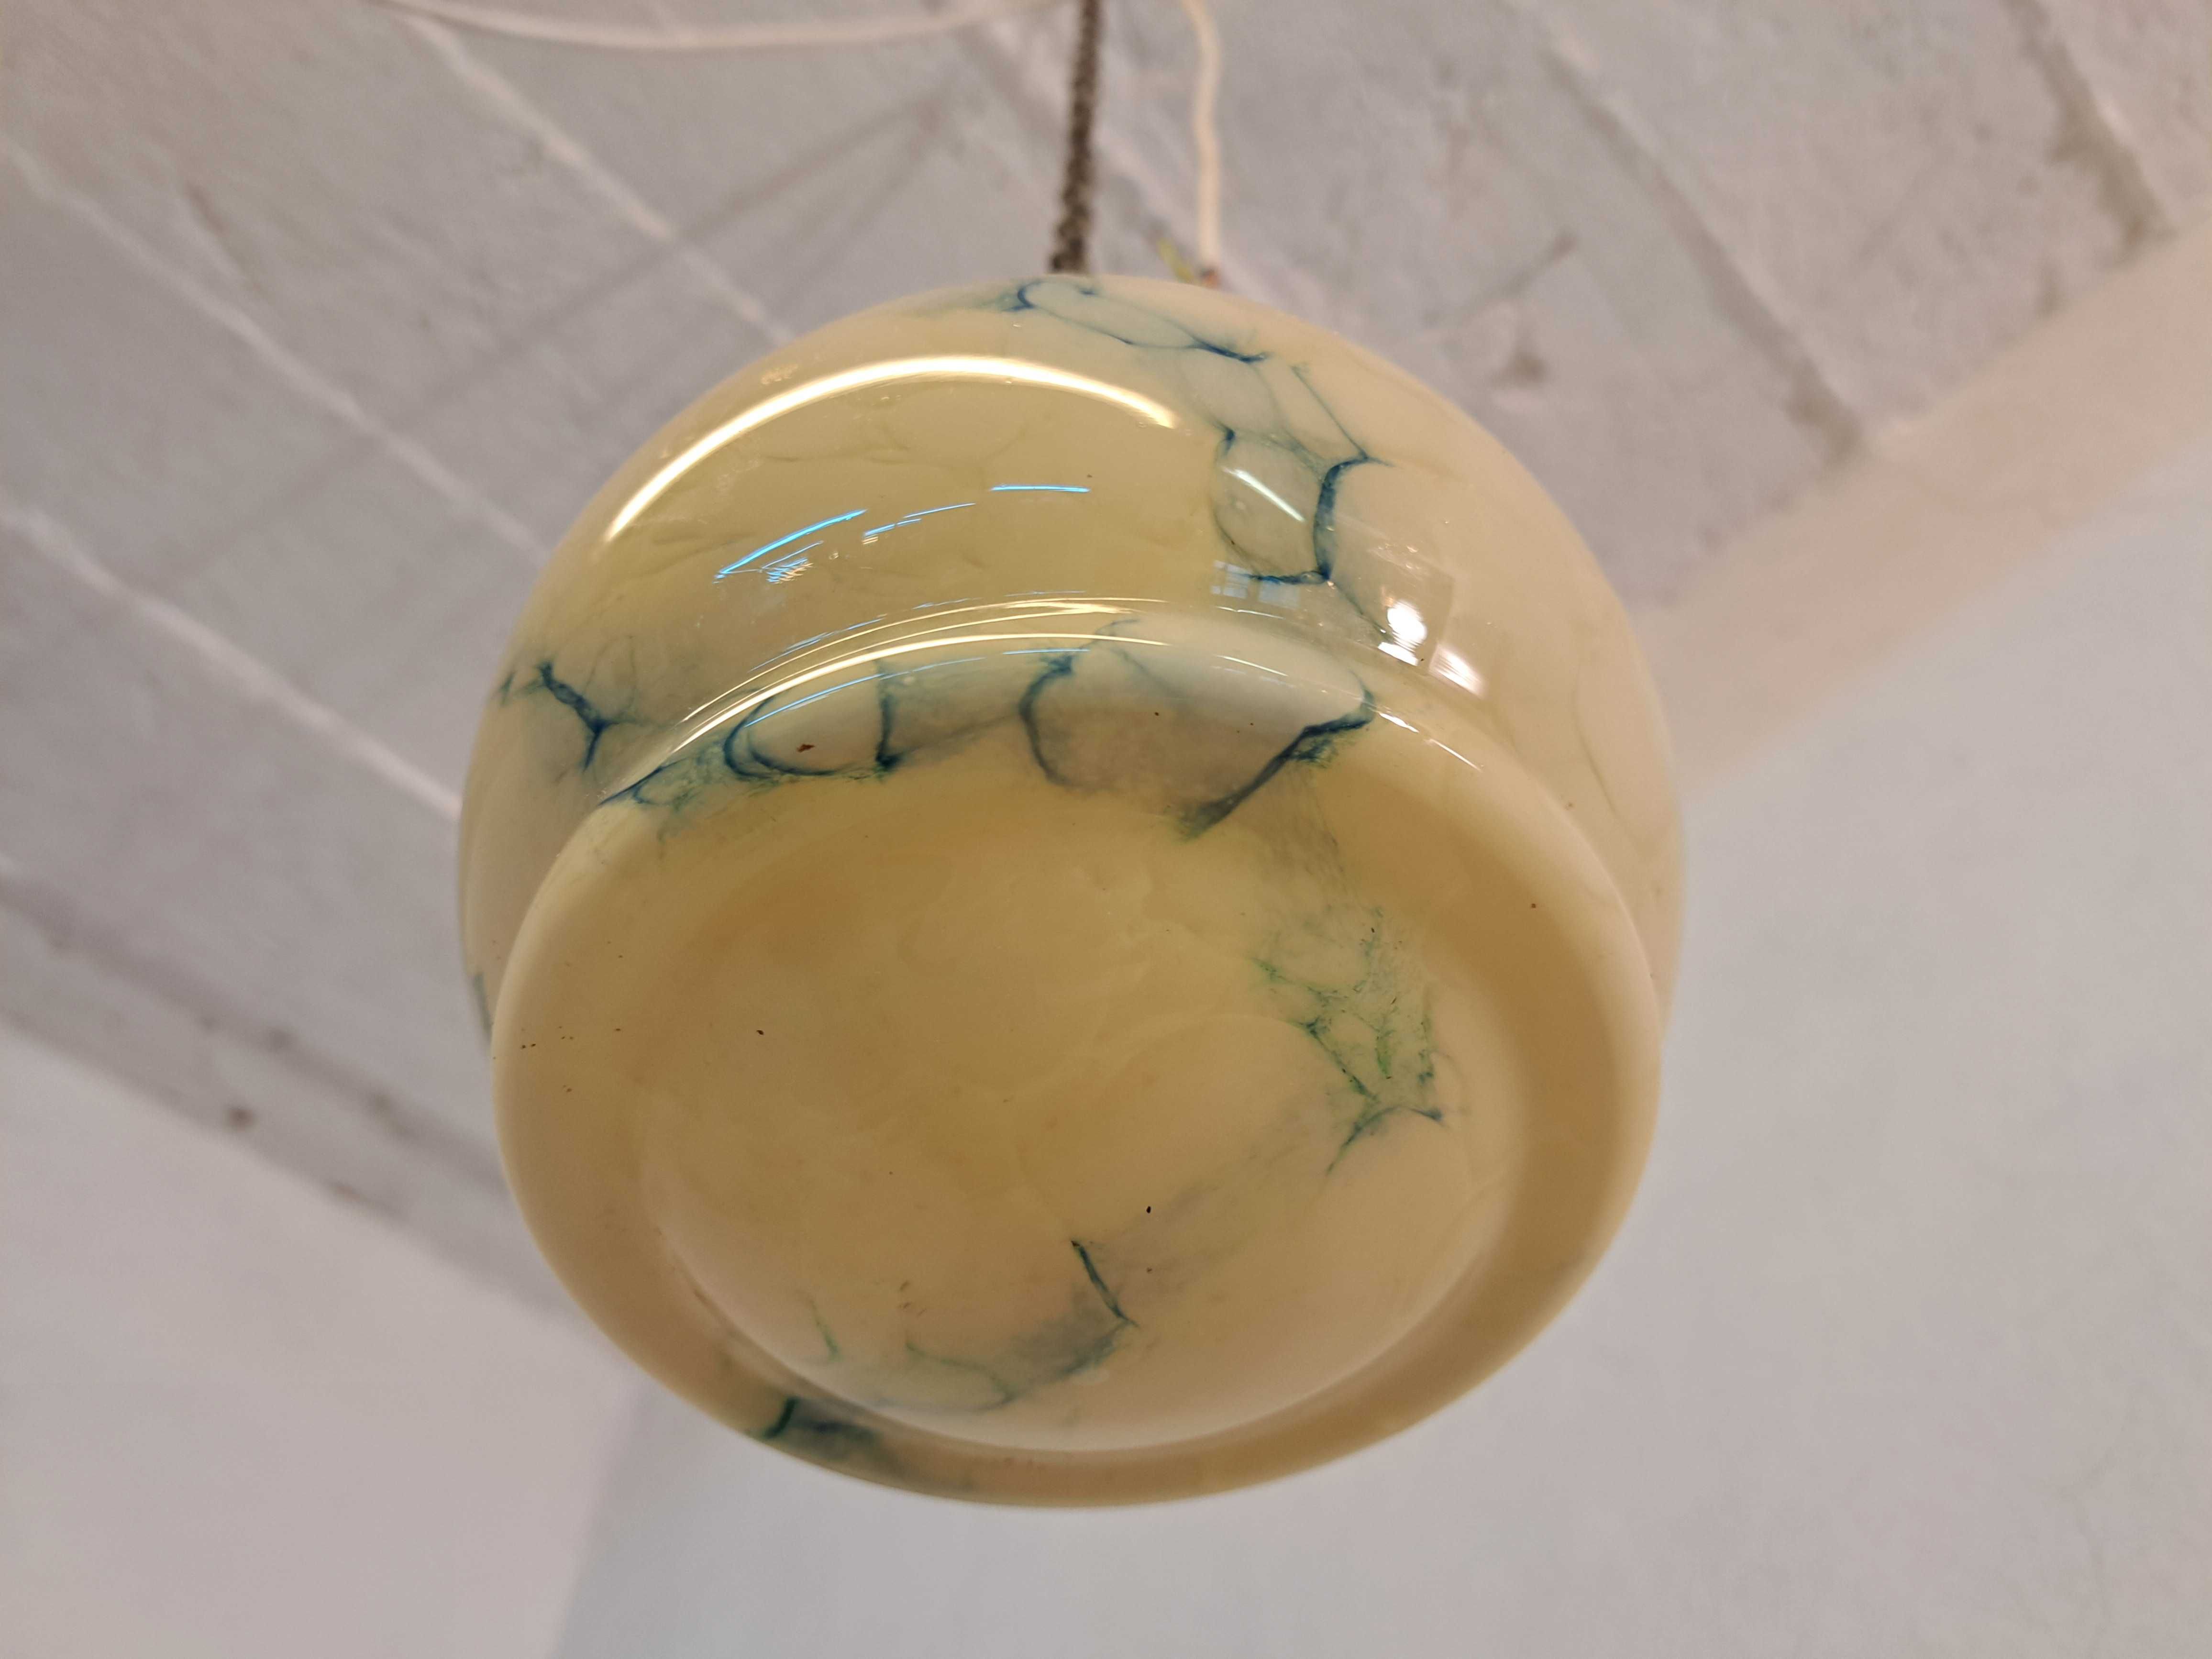 Lampa ampla art deco szklany klosz marmurek spłaszczona kula